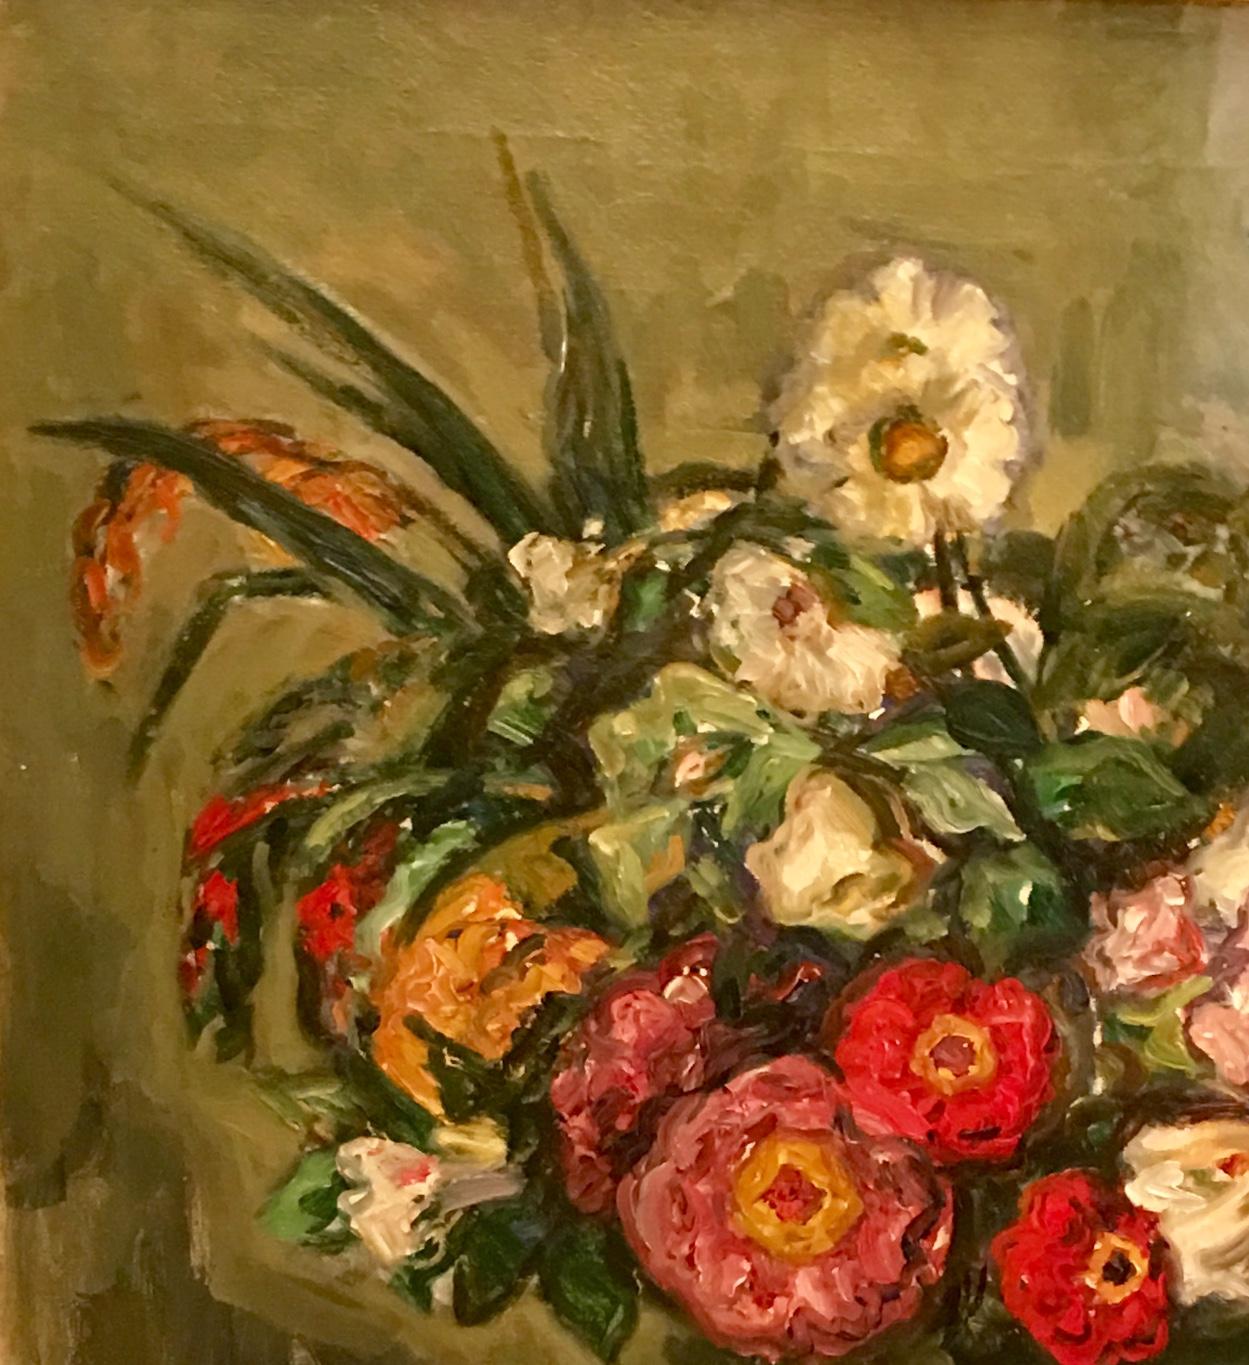 Dieses farbenfrohe, klassisch komponierte und dennoch locker gemalte Original-Stillleben in Öl auf Leinwand mit Blumen in einer Vase auf einem Tisch ist ein schönes Beispiel für das Werk des berühmten, unter Denkmalschutz stehenden, verstorbenen